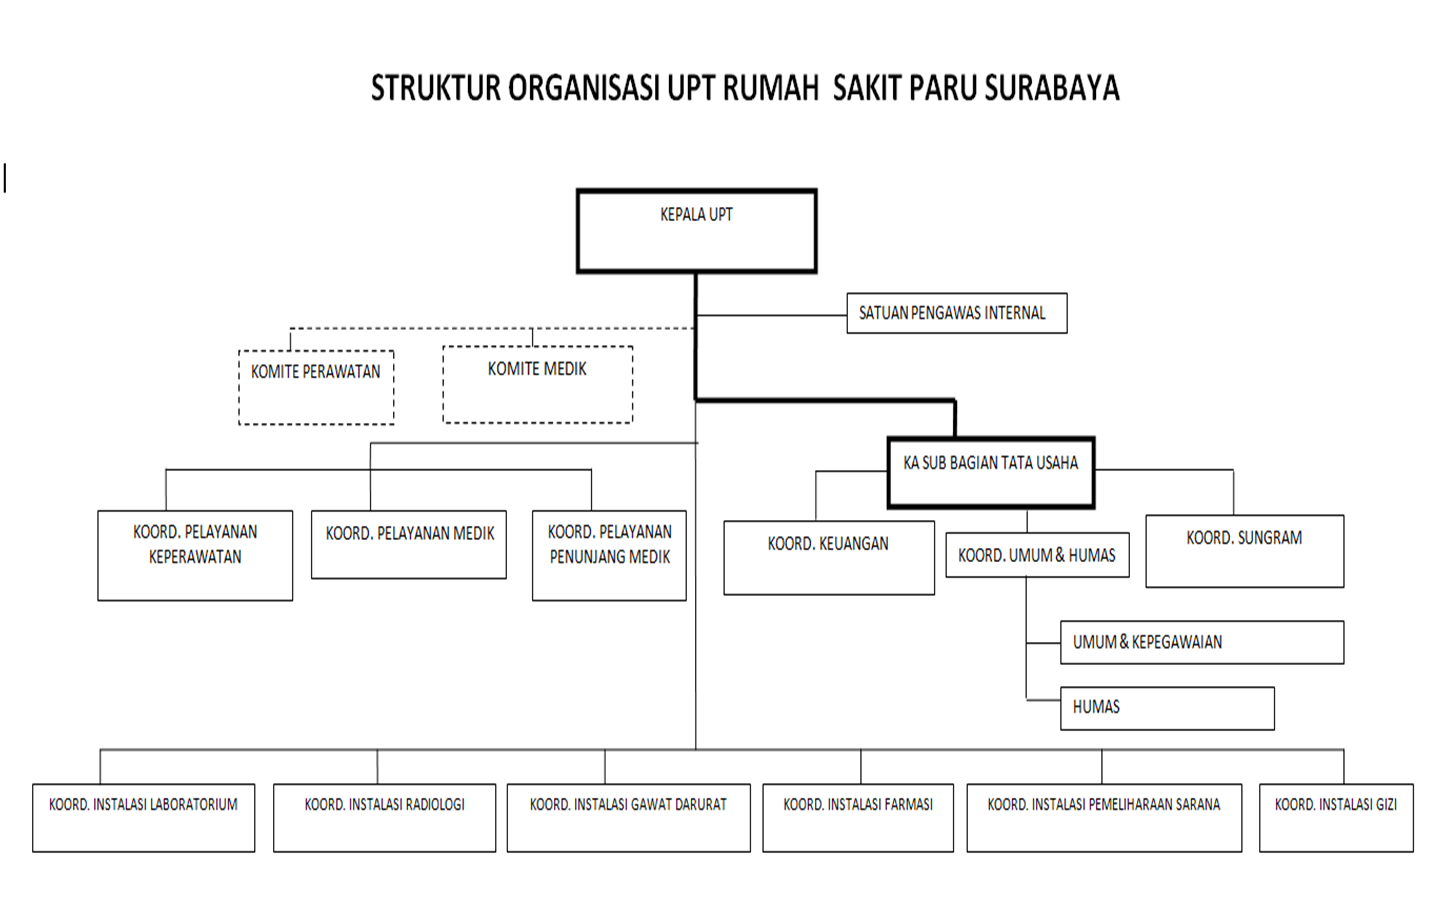 Gambar Gambar Struktur Organisasi Rumah Sakit - Wall PPX